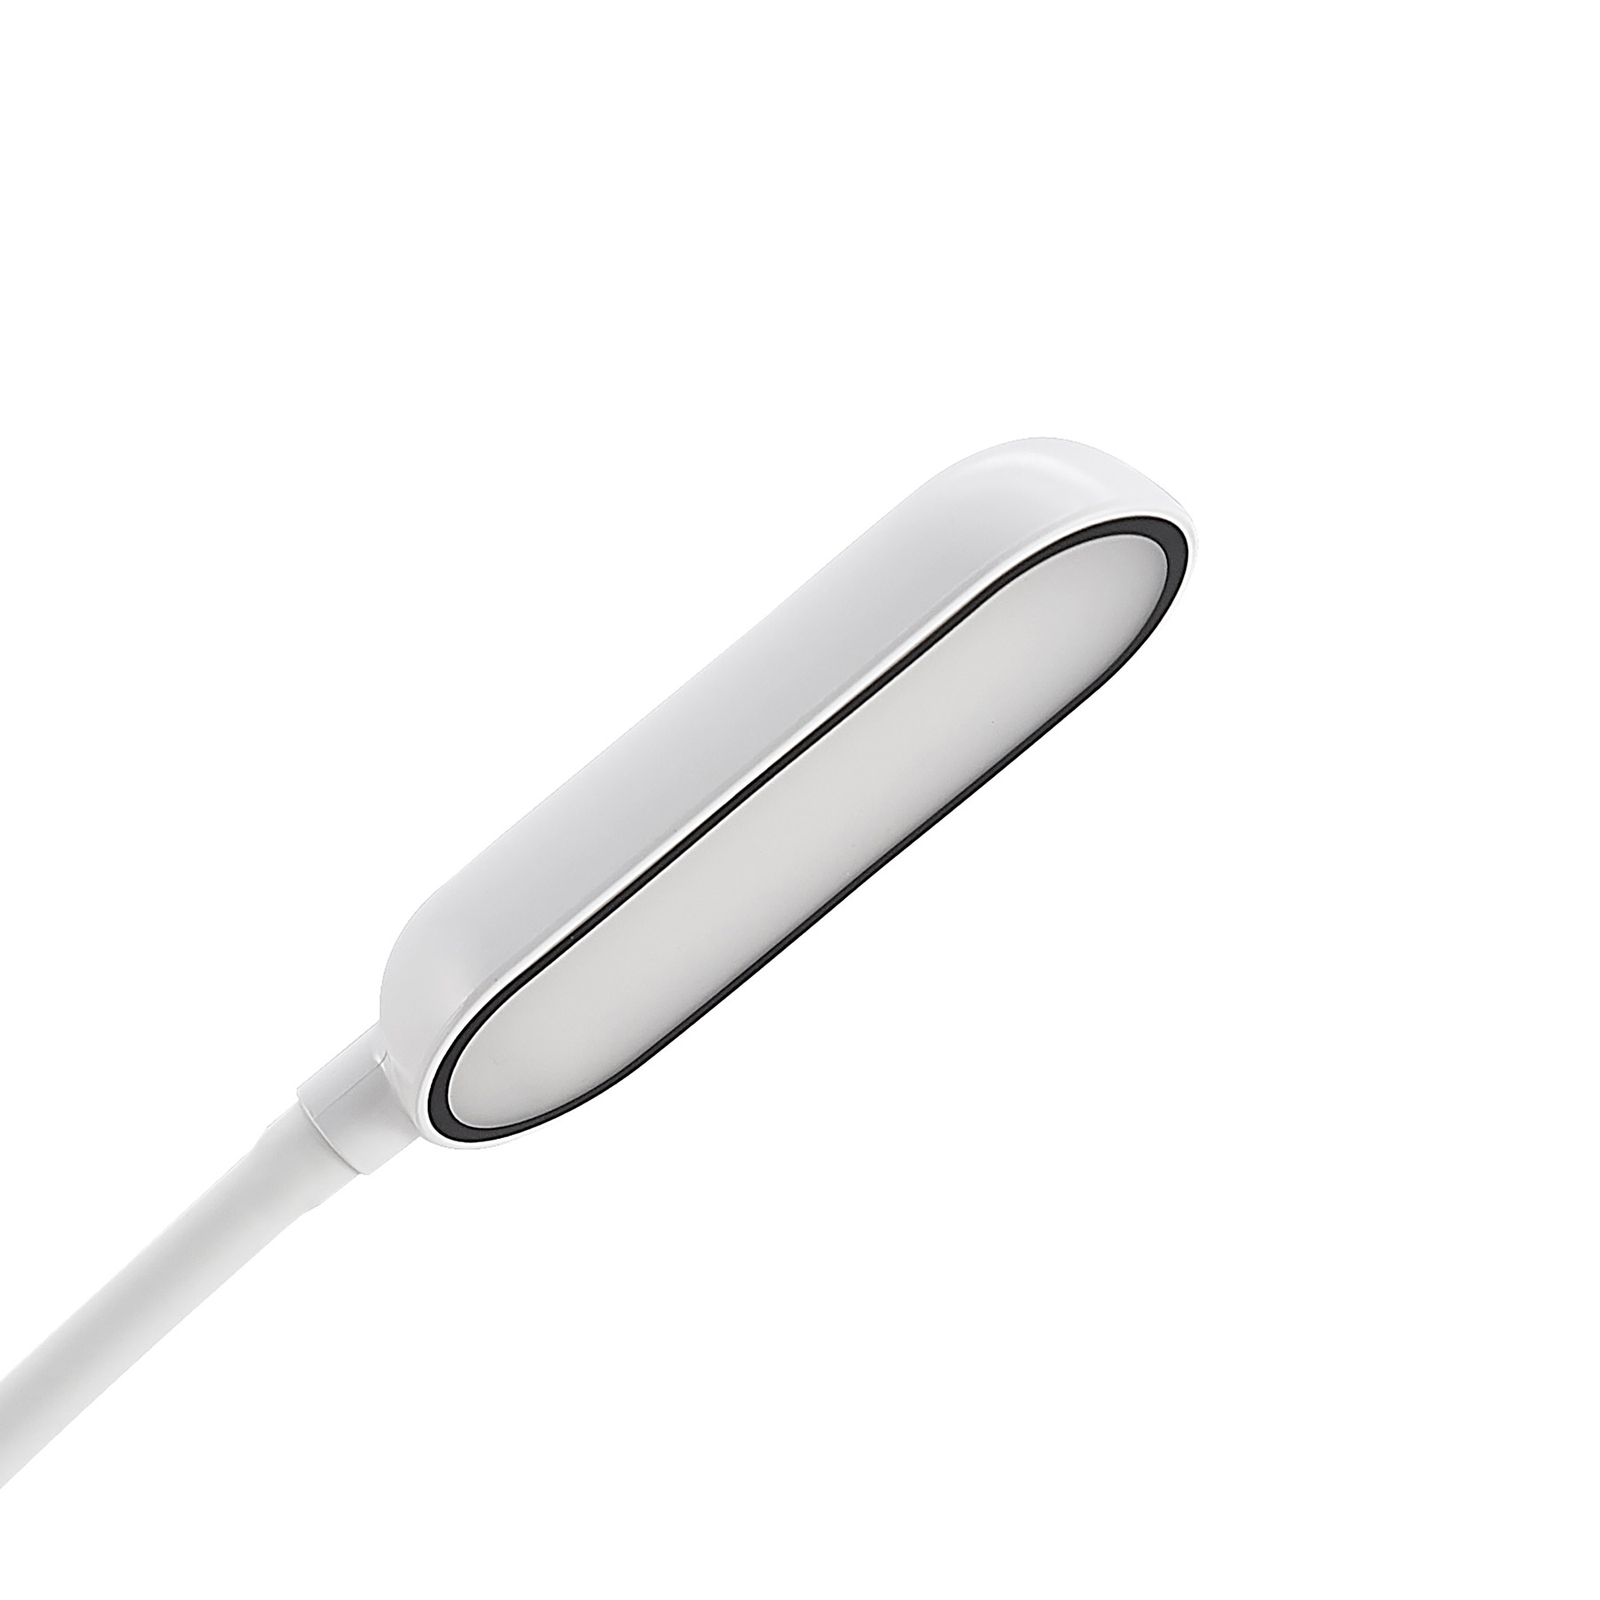 Prios LED-es bilincslámpa Najari, fehér, újratölthető akkumulátor, USB, 51